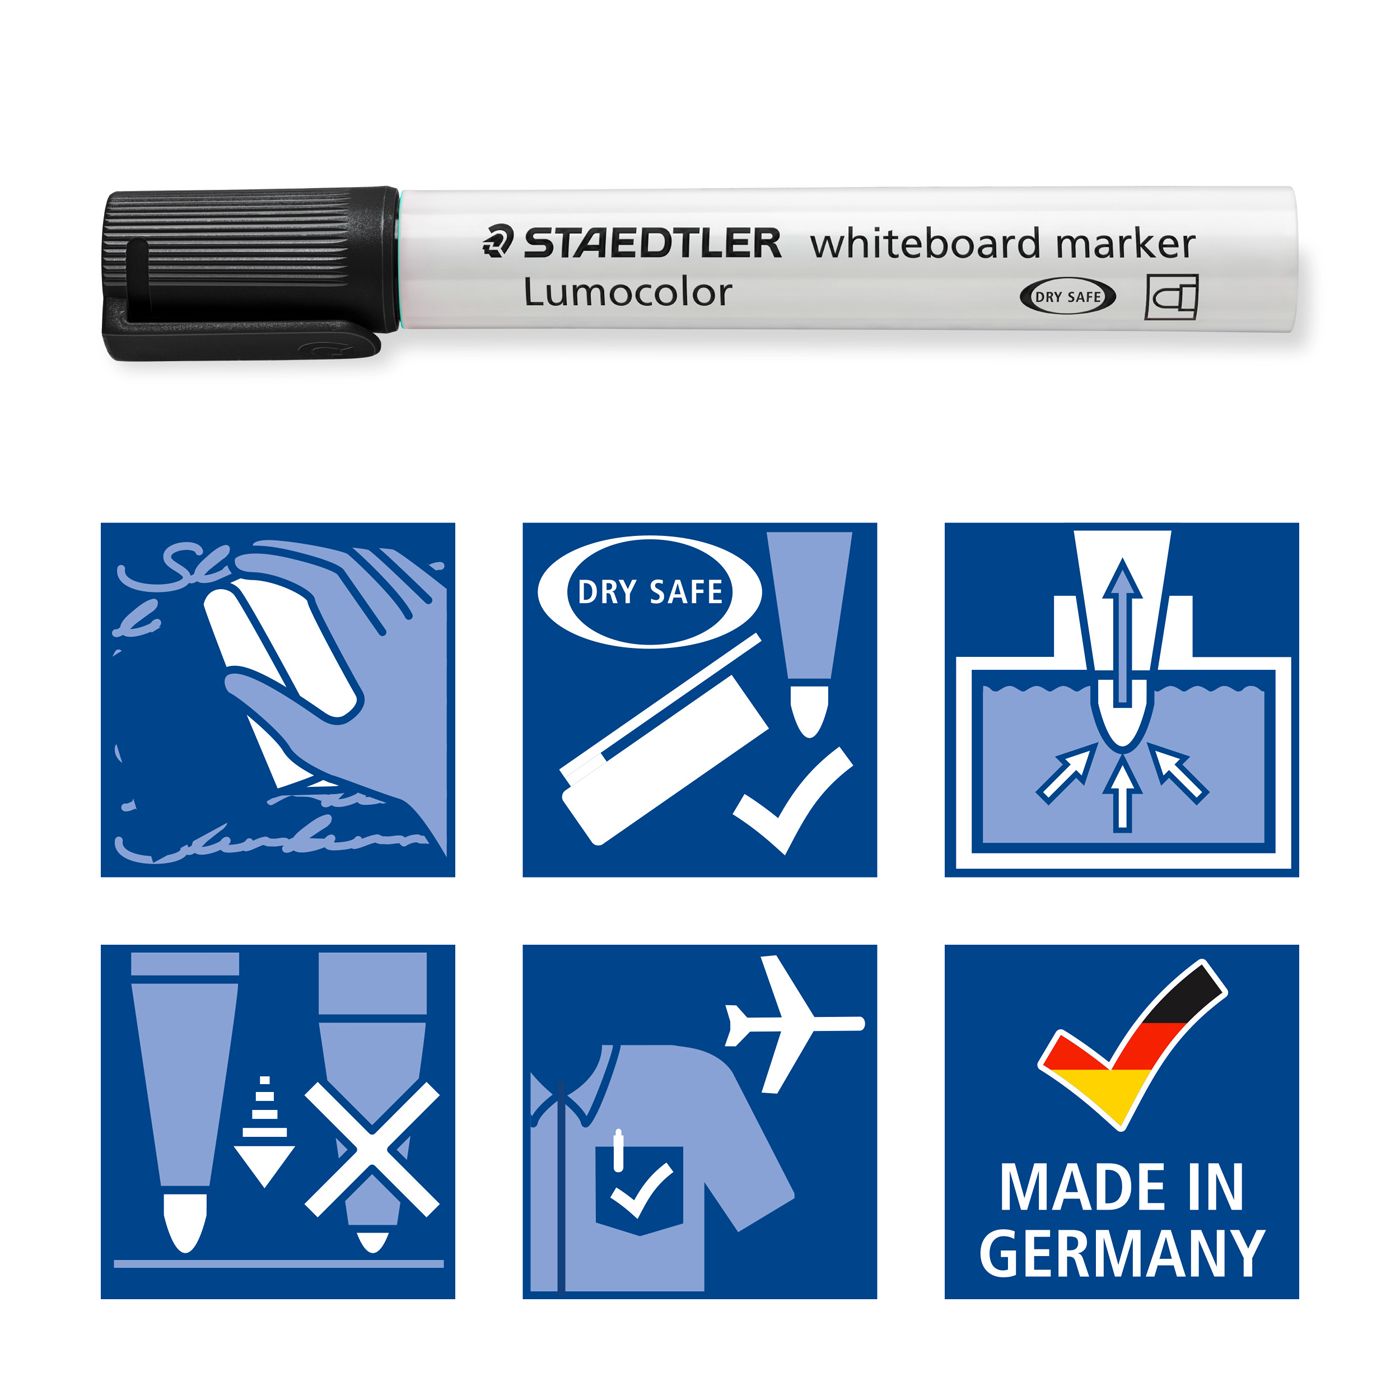 Staedtler Whiteboard Marker Bullet Tip Lumocolor Black